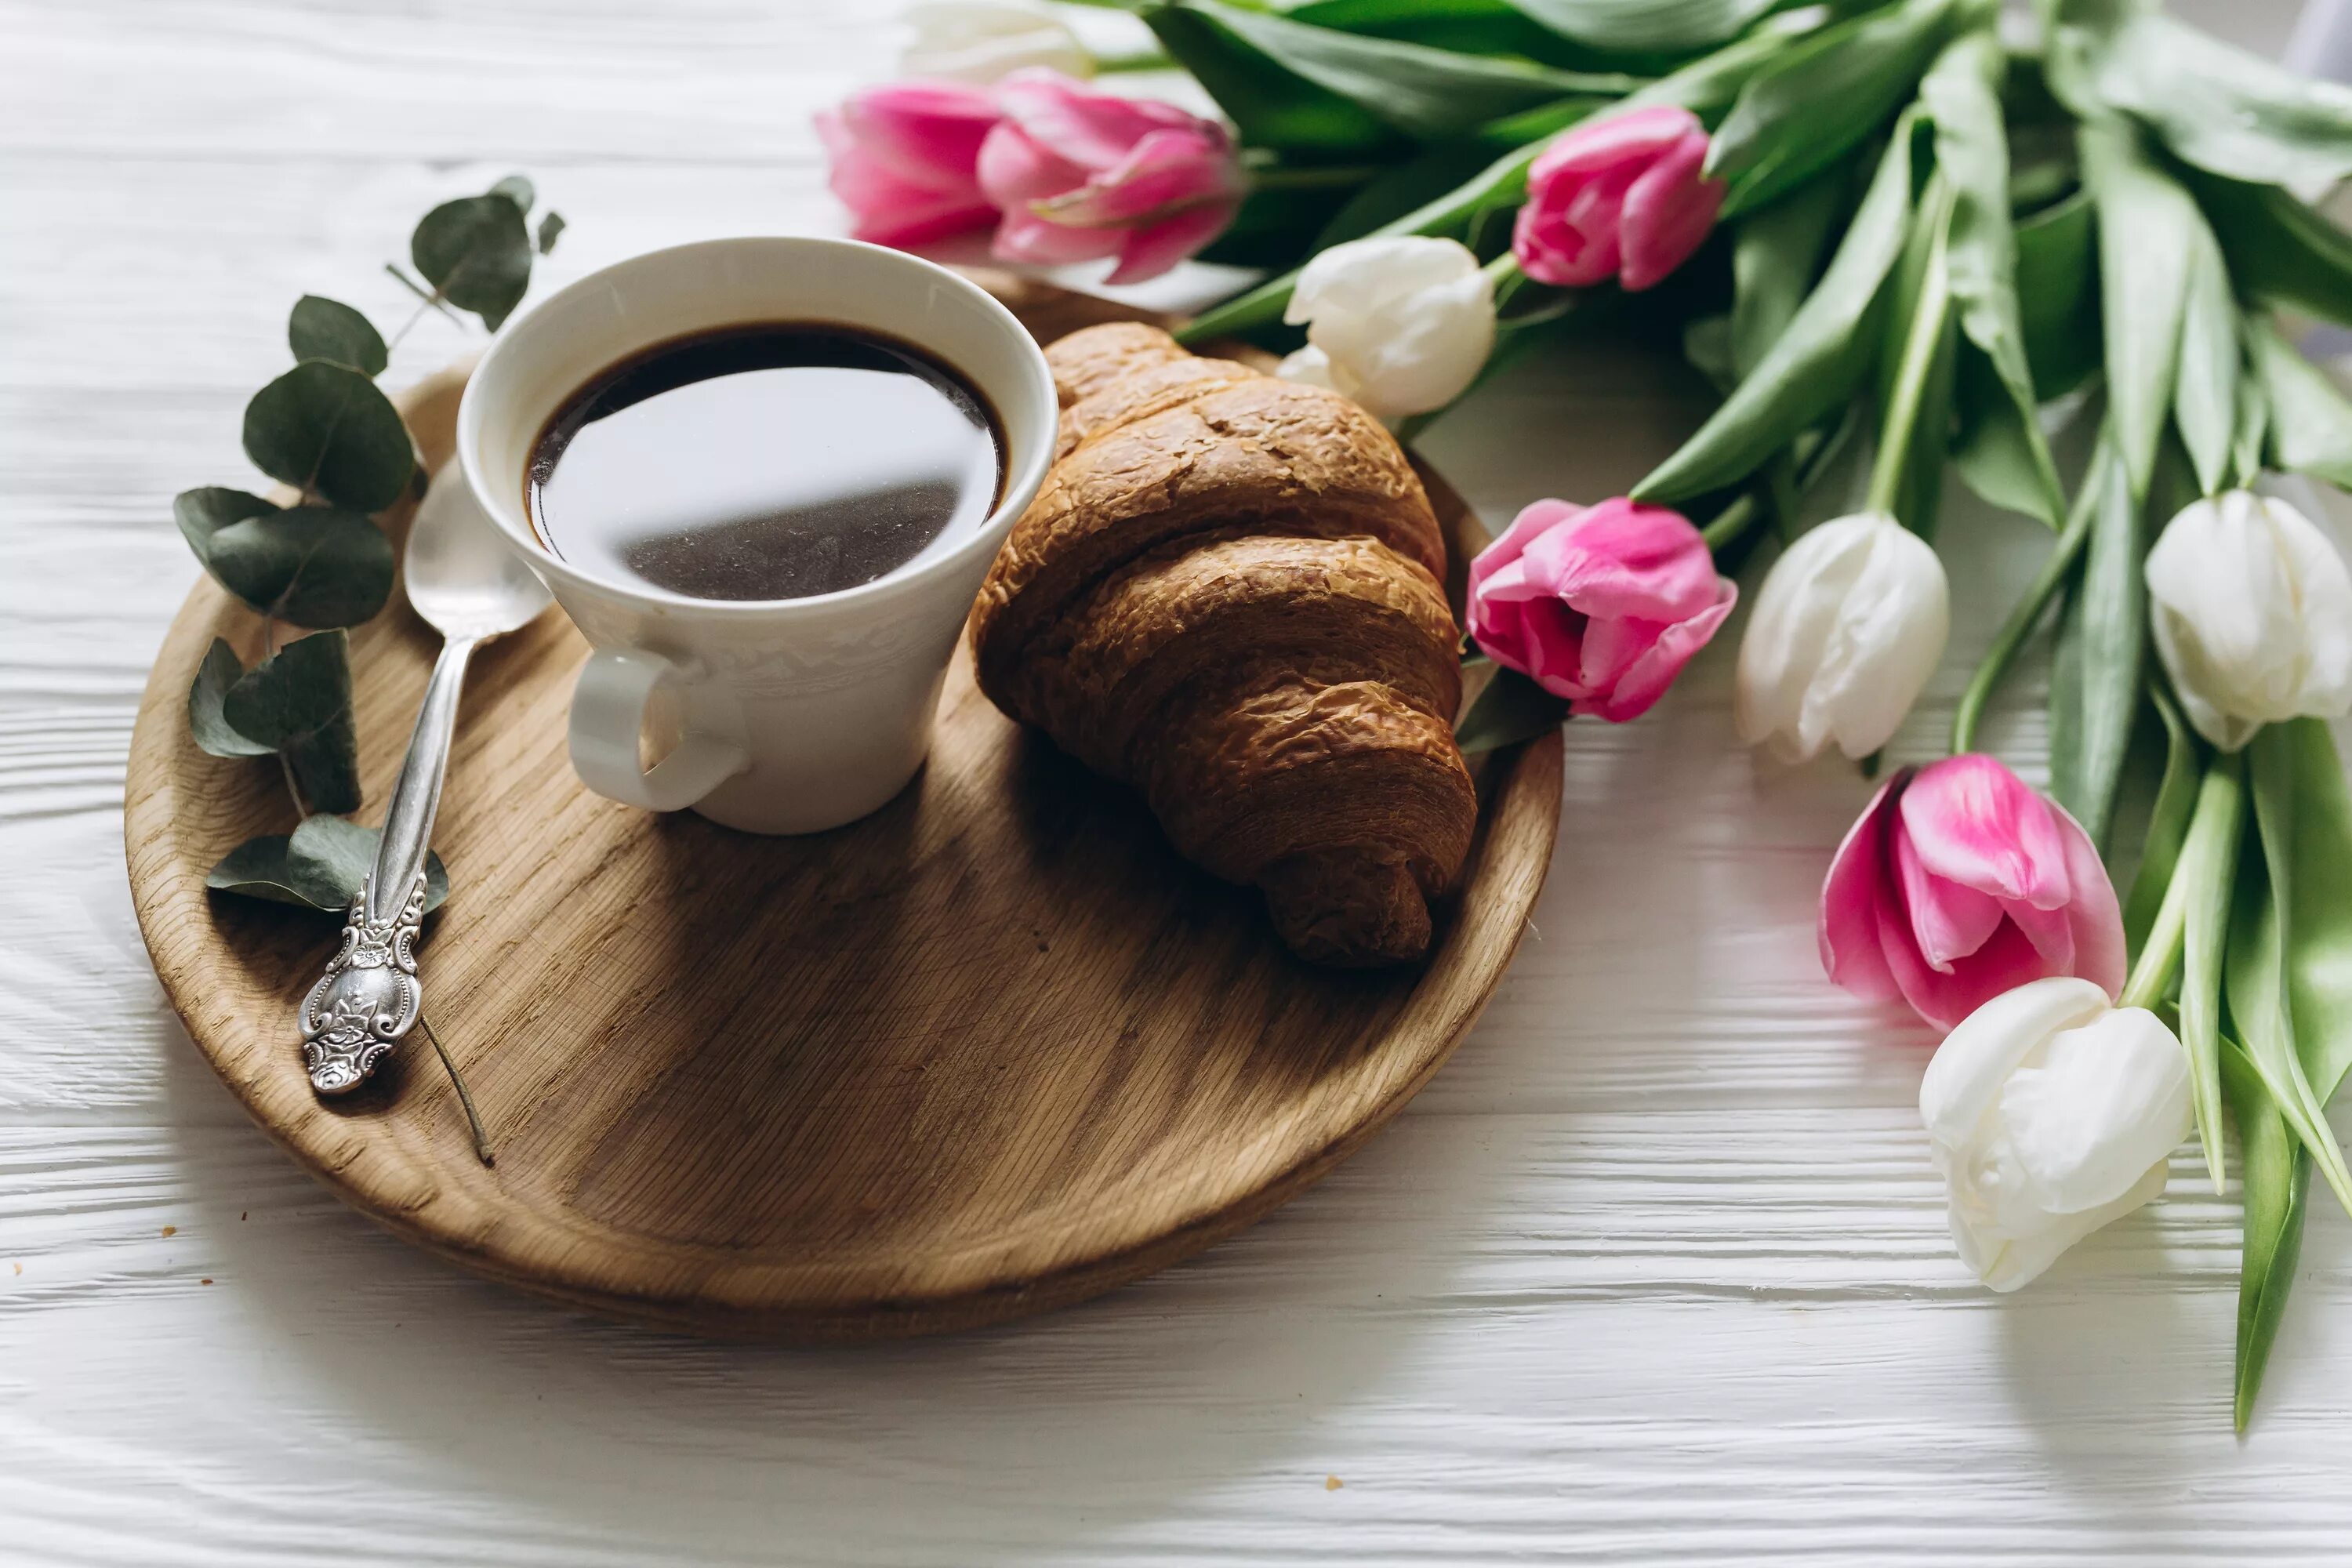 Картинка доброе утро с кофе и цветами. Кофе и цветы. Кофе с цветами. Красивый завтрак с цветами. Завтрак с цветами и кофе.